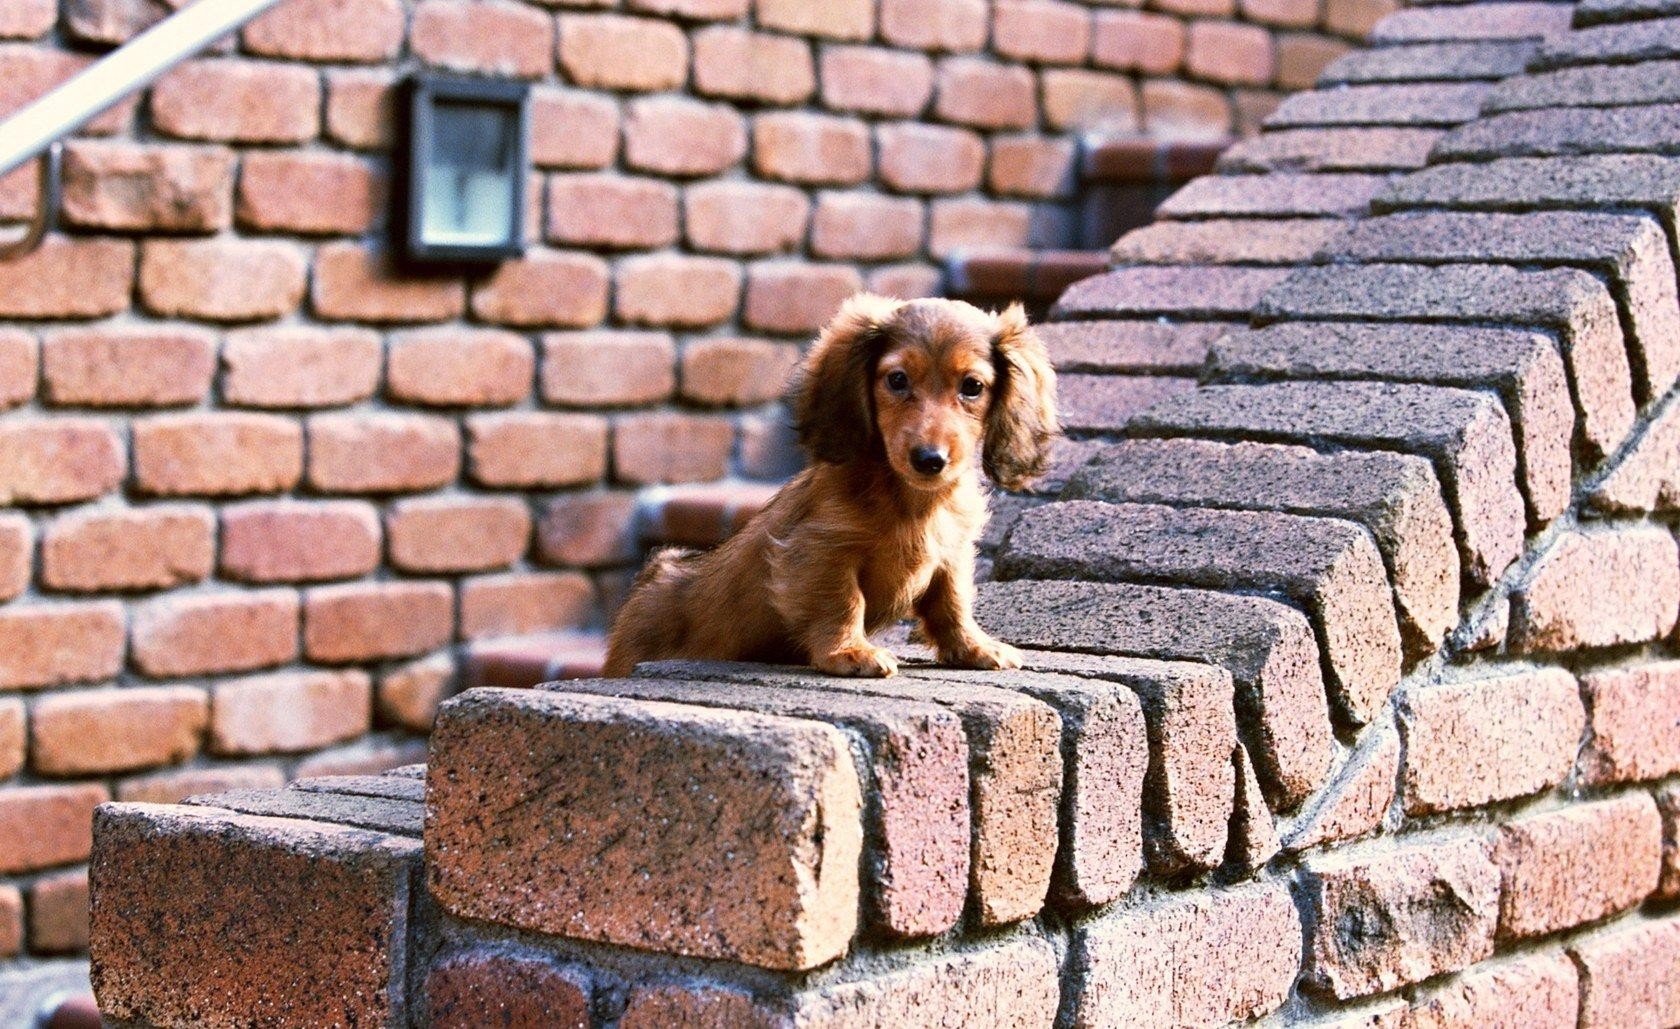 animals, sit, puppy, bricks, ears